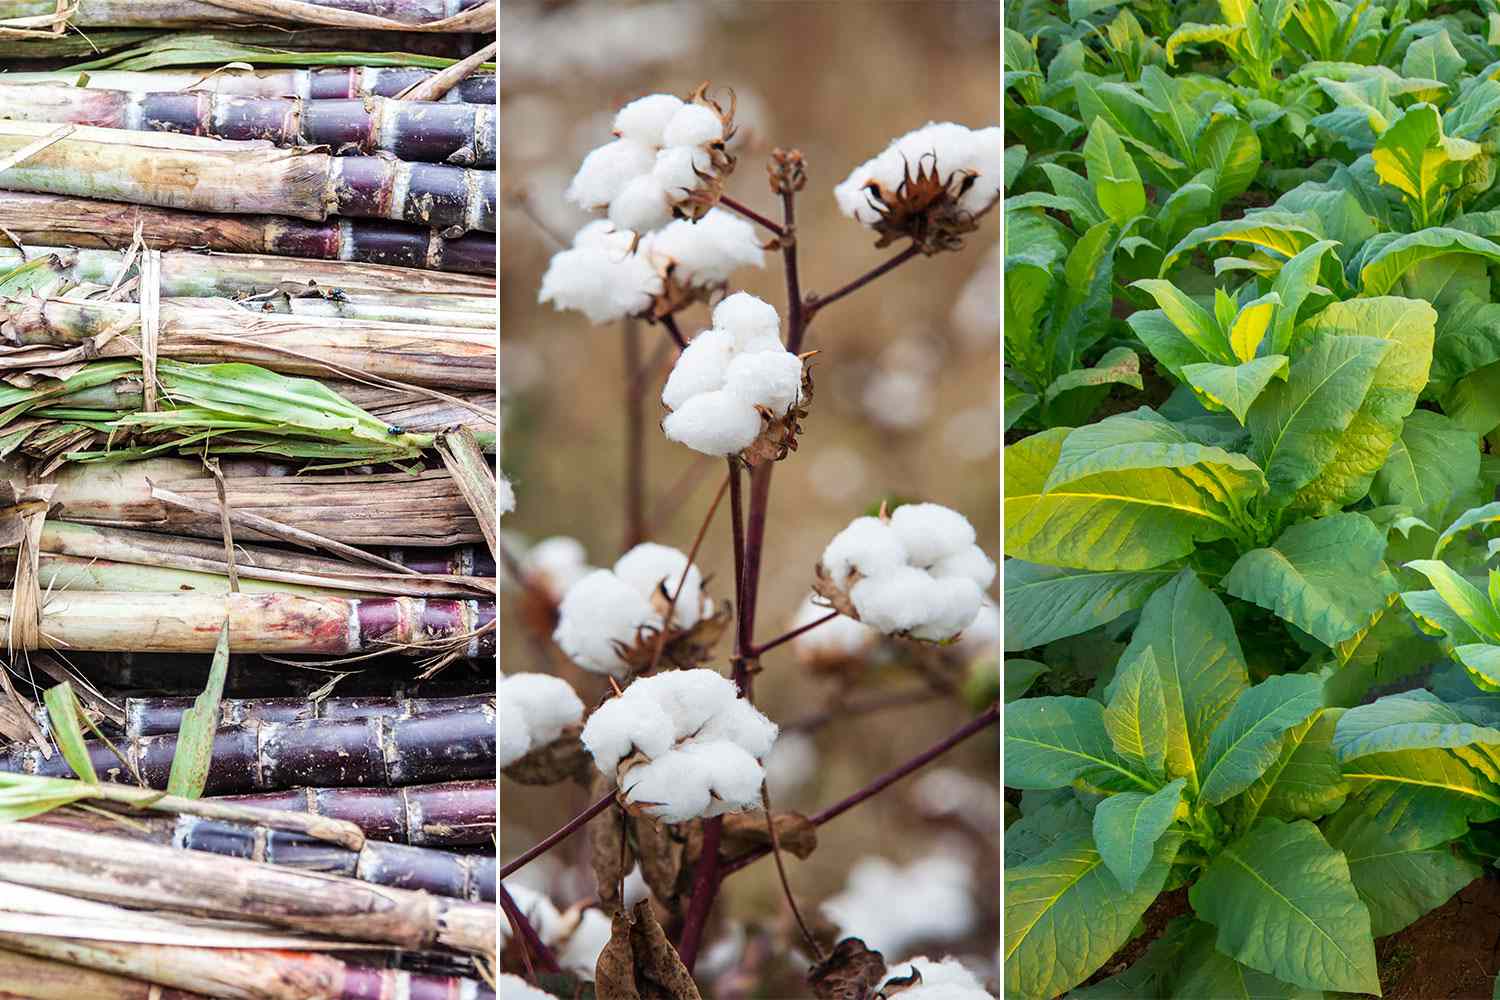 Cash Crops (l to r) - sugar cane, cotton, tobacco